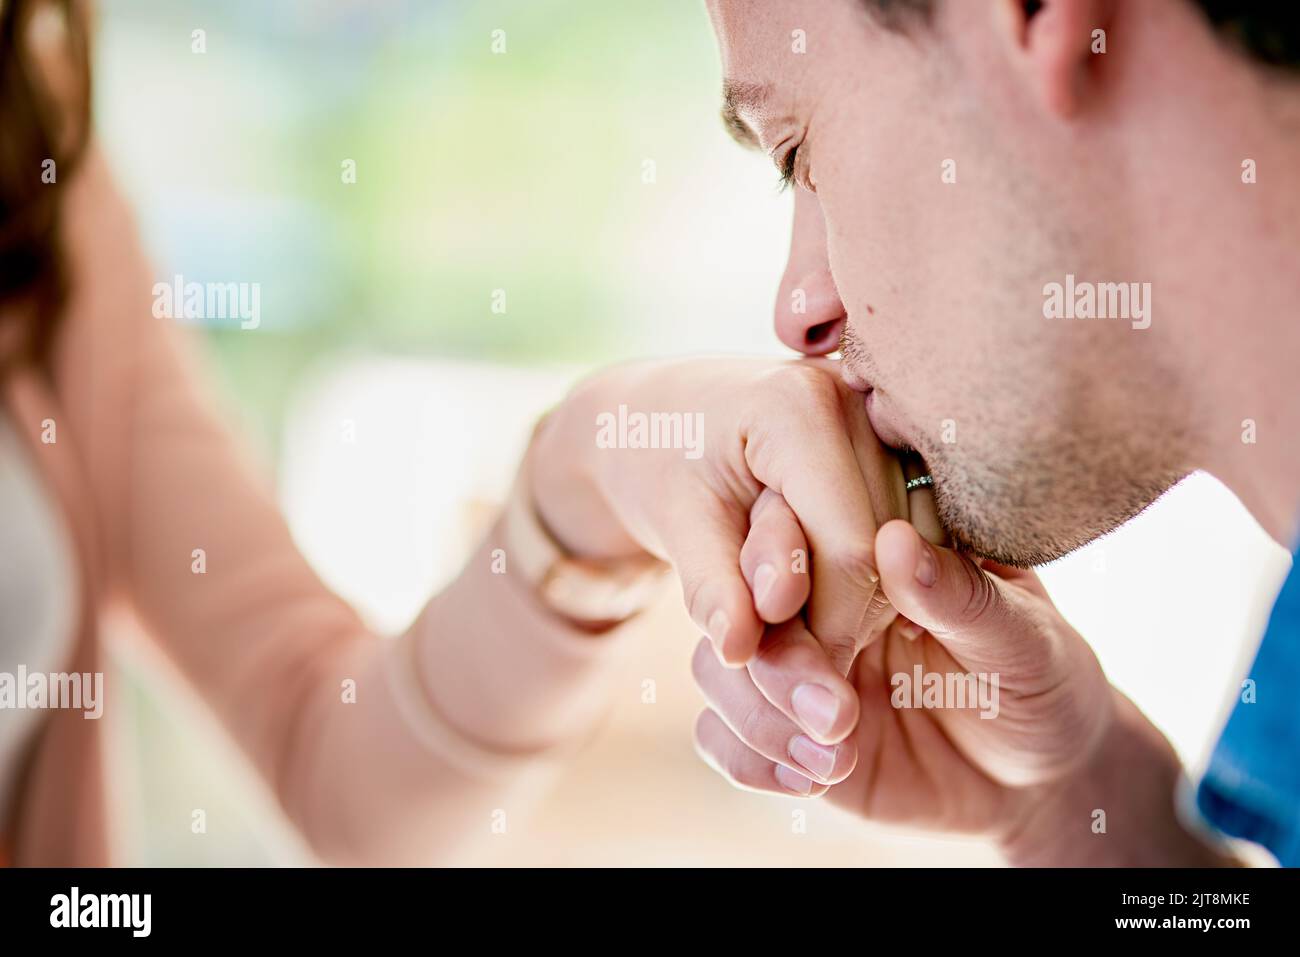 ID Dive la mia vita per voi. Primo piano di un giovane che bacia la mano dei fidanzati. Foto Stock